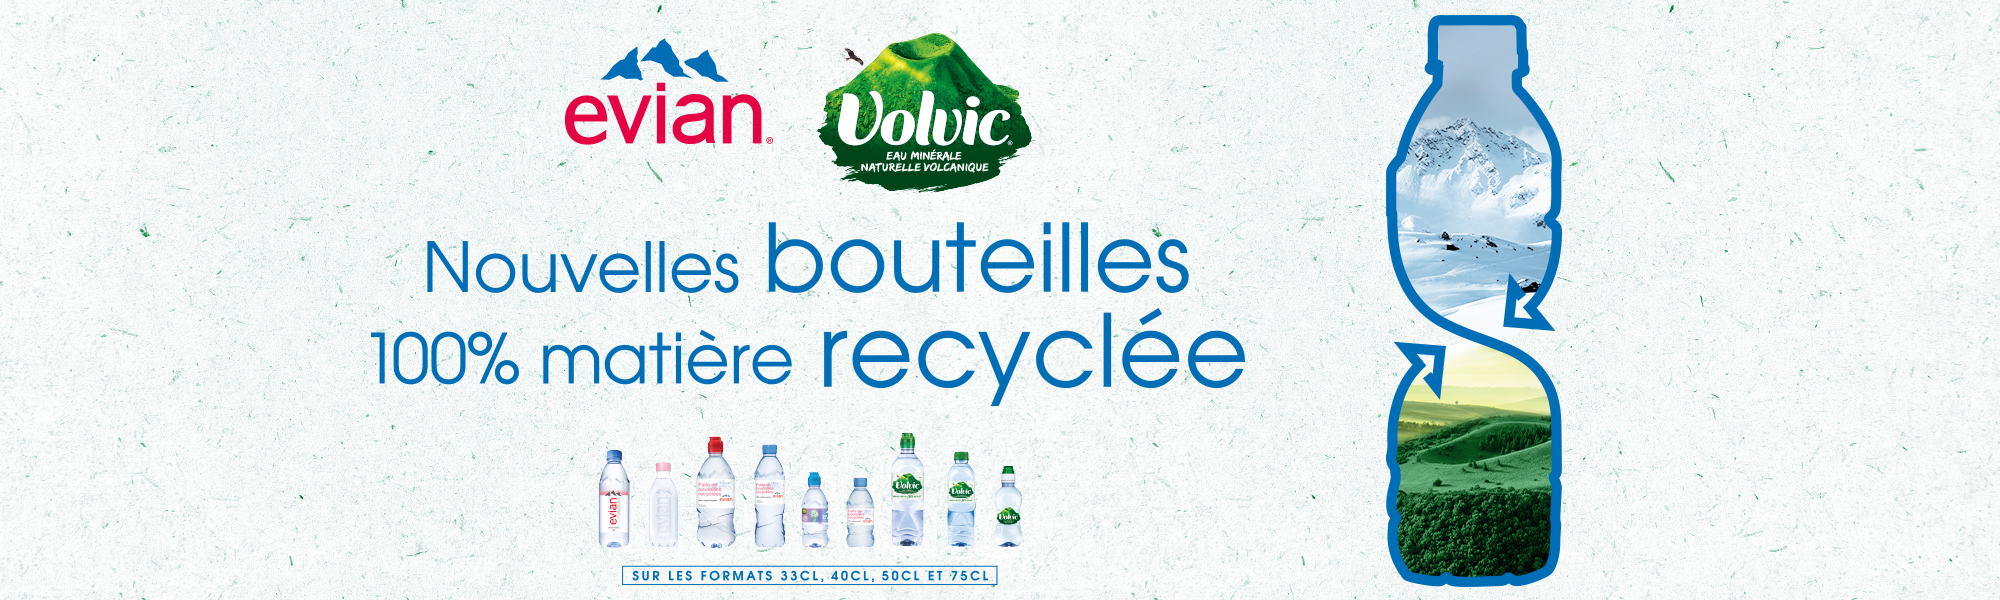 Bouteilles faites de bouteilles recyclées - Evian Experience